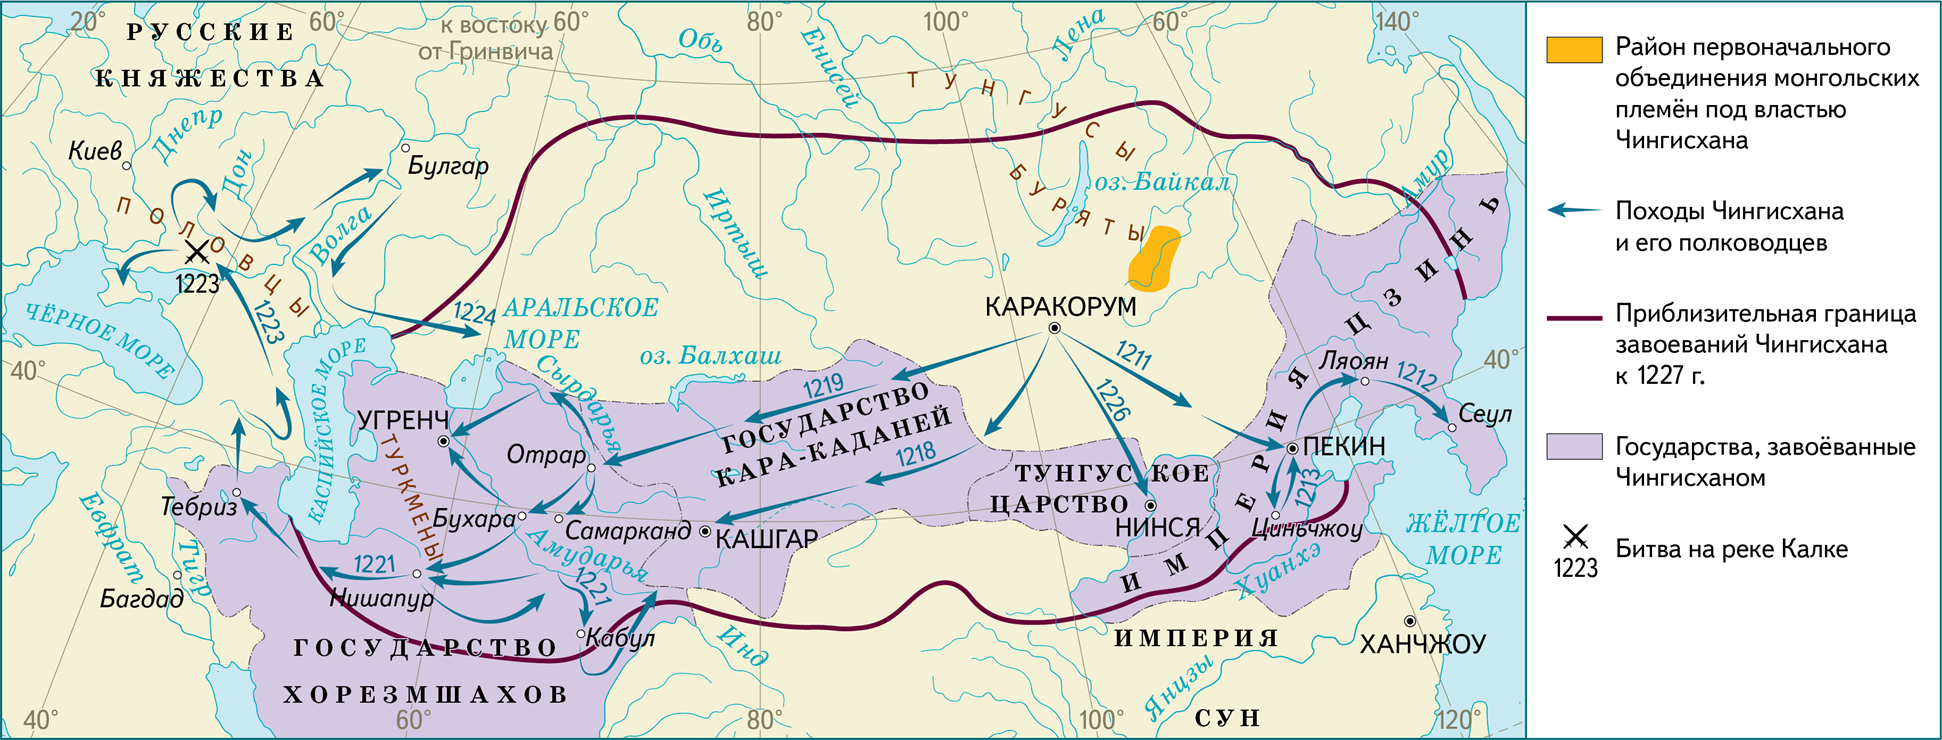 Монгольская Империя 1227. Завоевания Чингисхана карта. Карта завоеваний Монголии. 1206-1227 Правление Чингисхана.